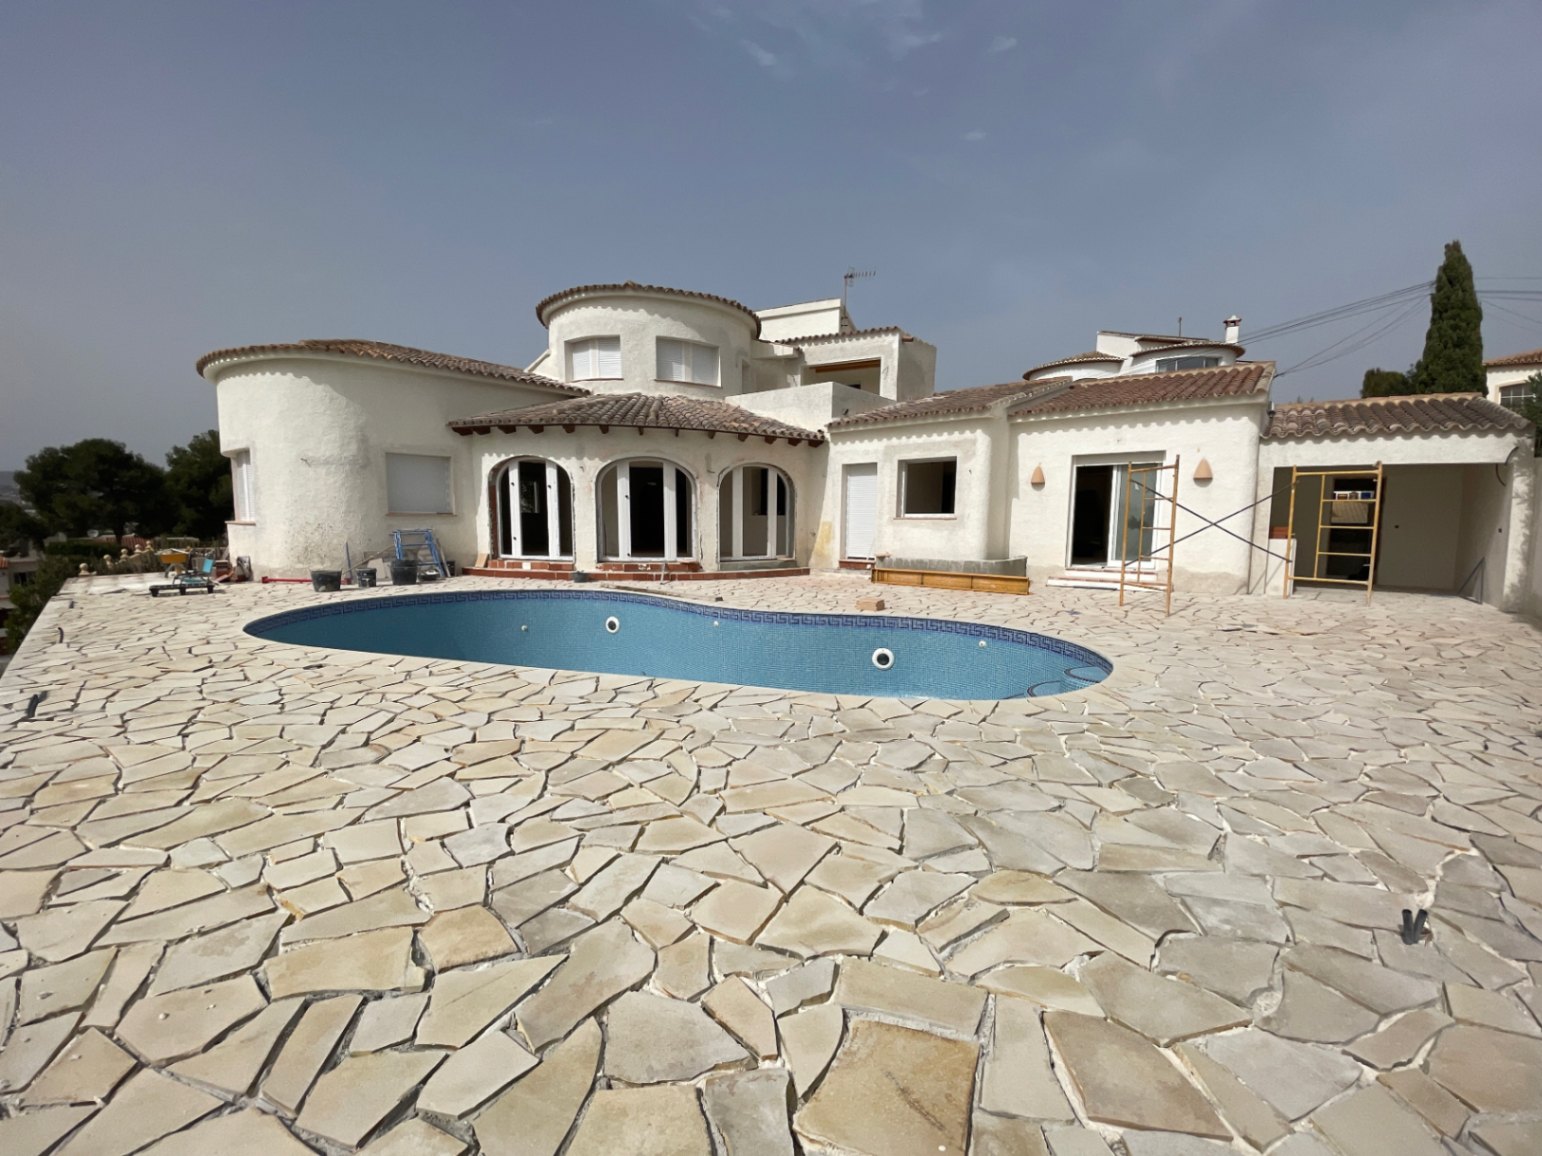 Renovated Ibizan style villa for sale in Costera del Mar Moraira, Costa Blanca